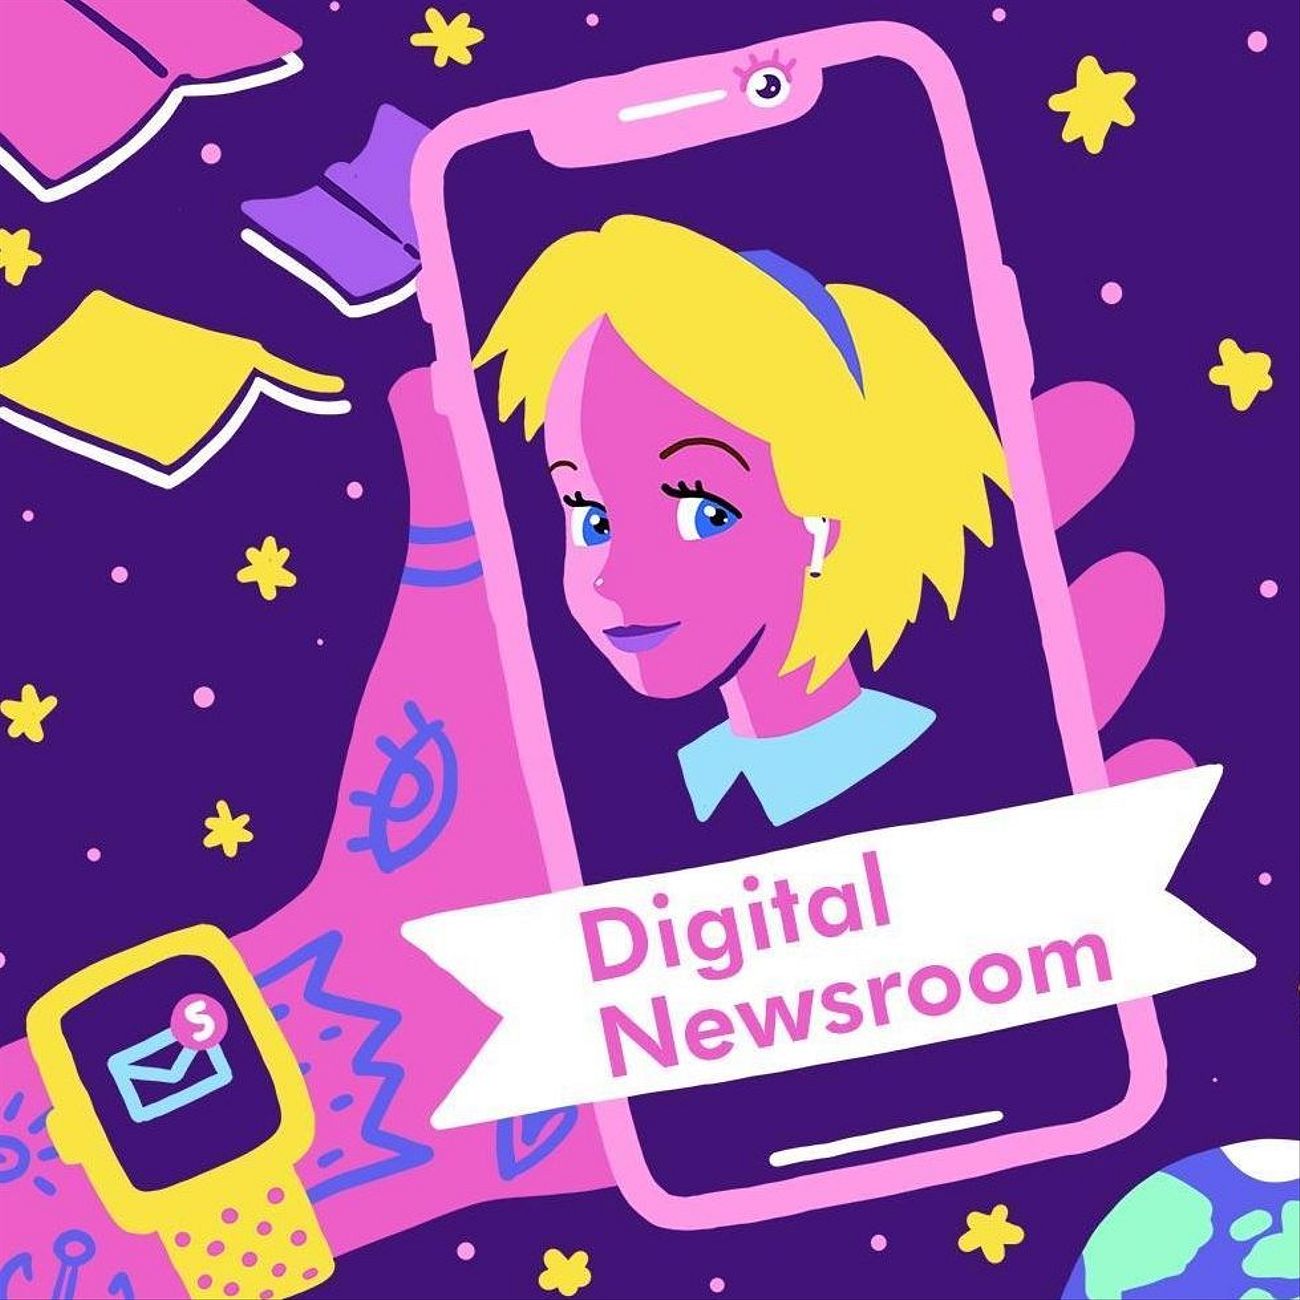 Digital Newsroom